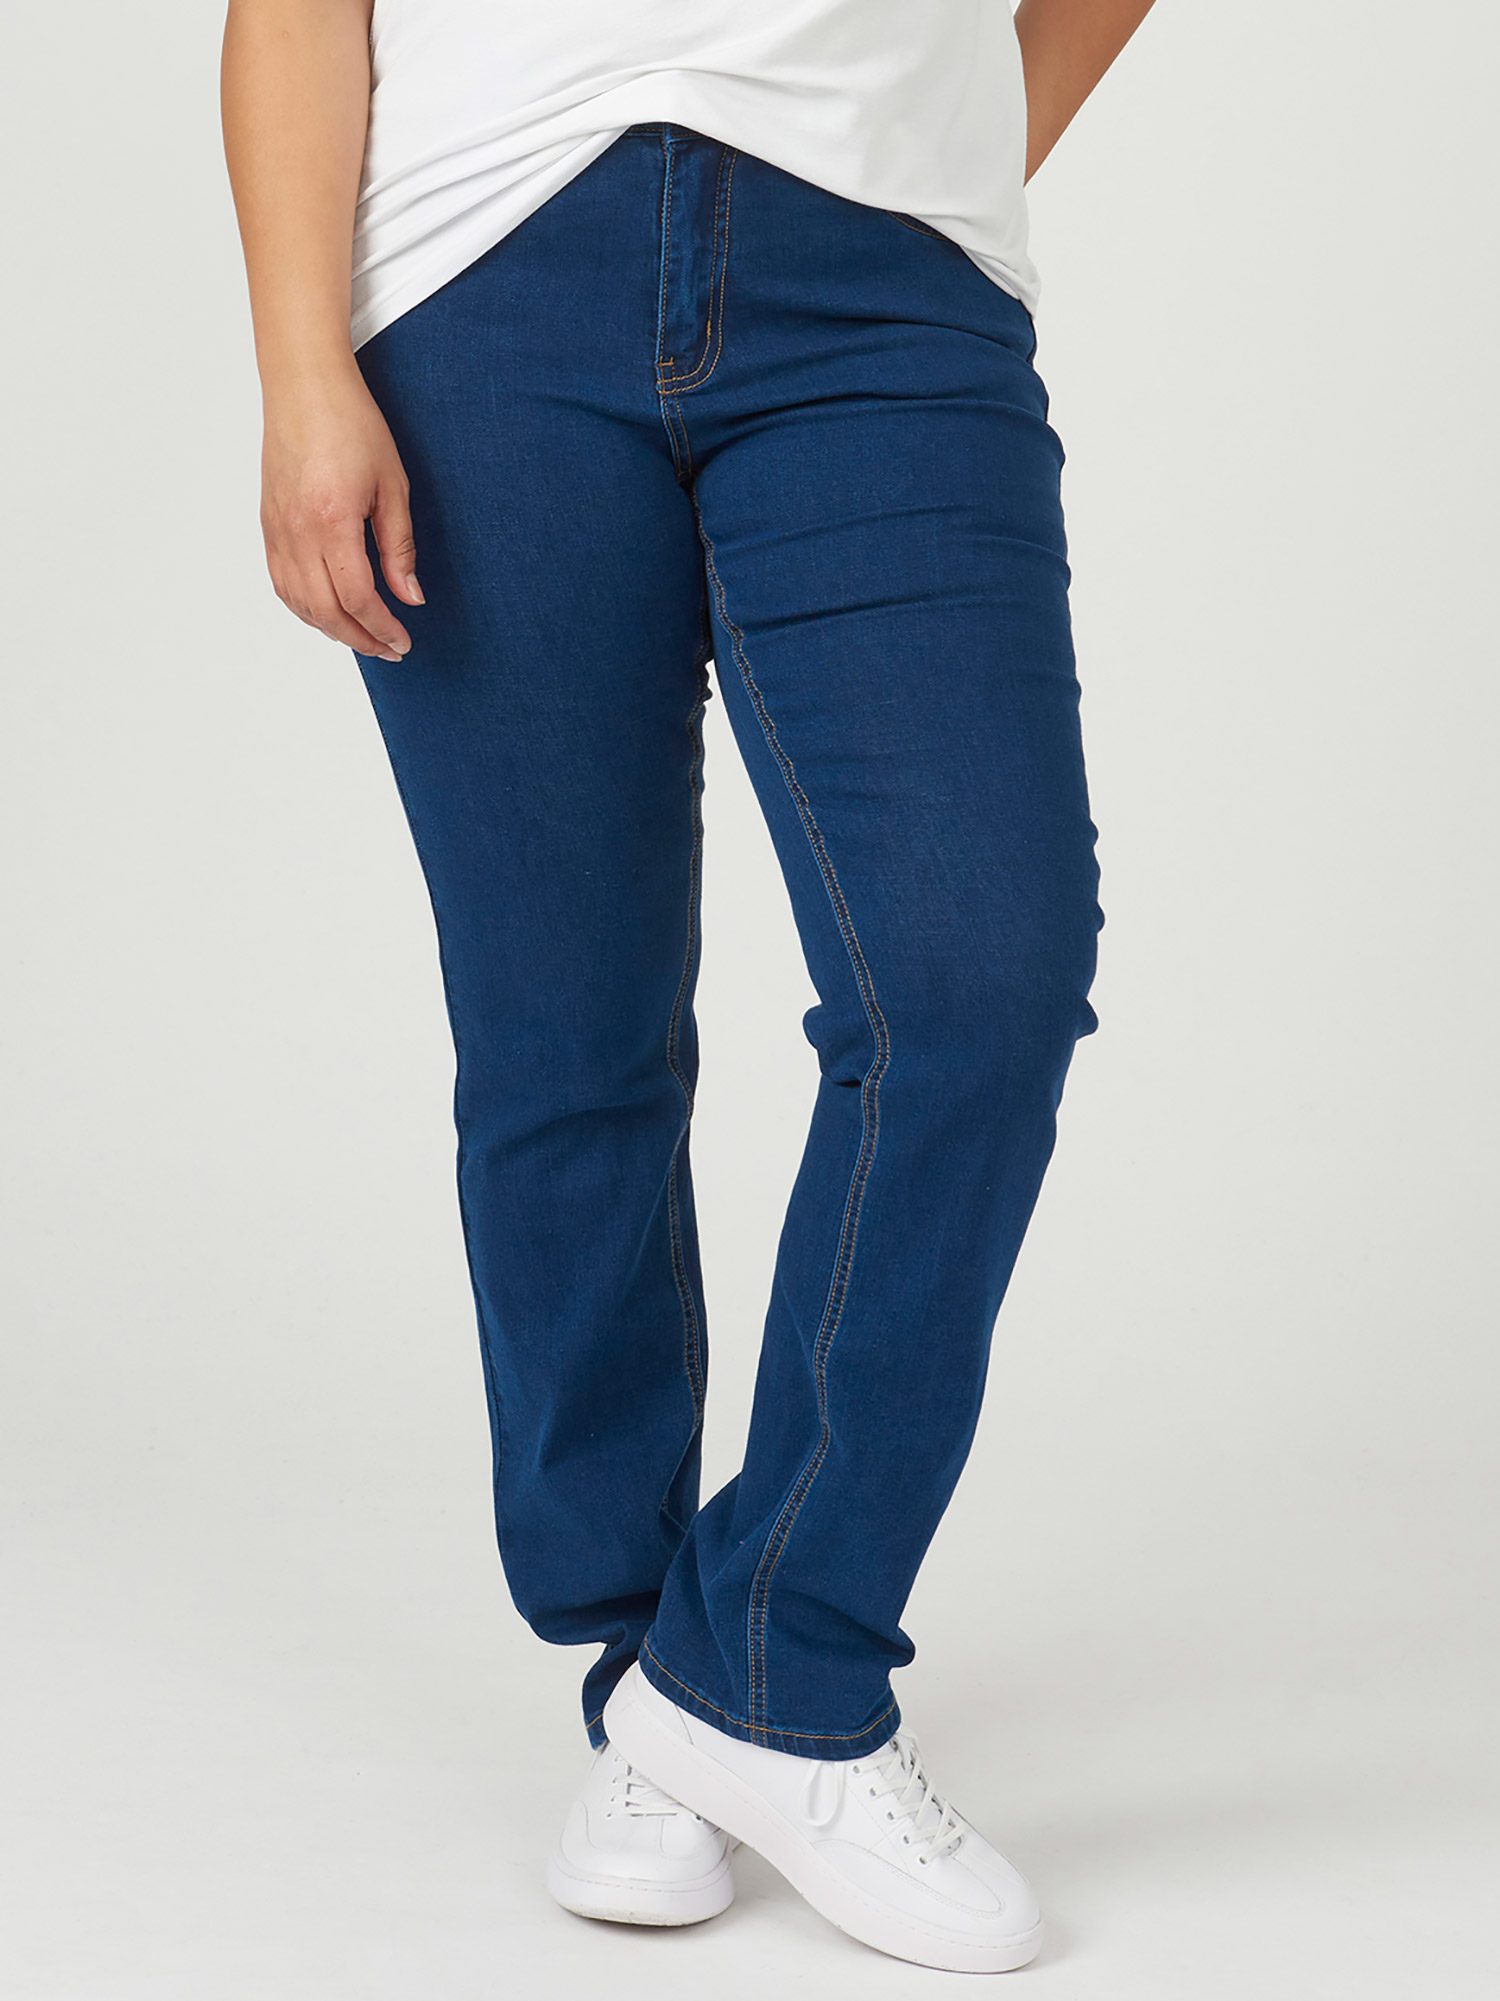 MONACO - Mørkeblå strækbar jeans med høj talje fra Adia